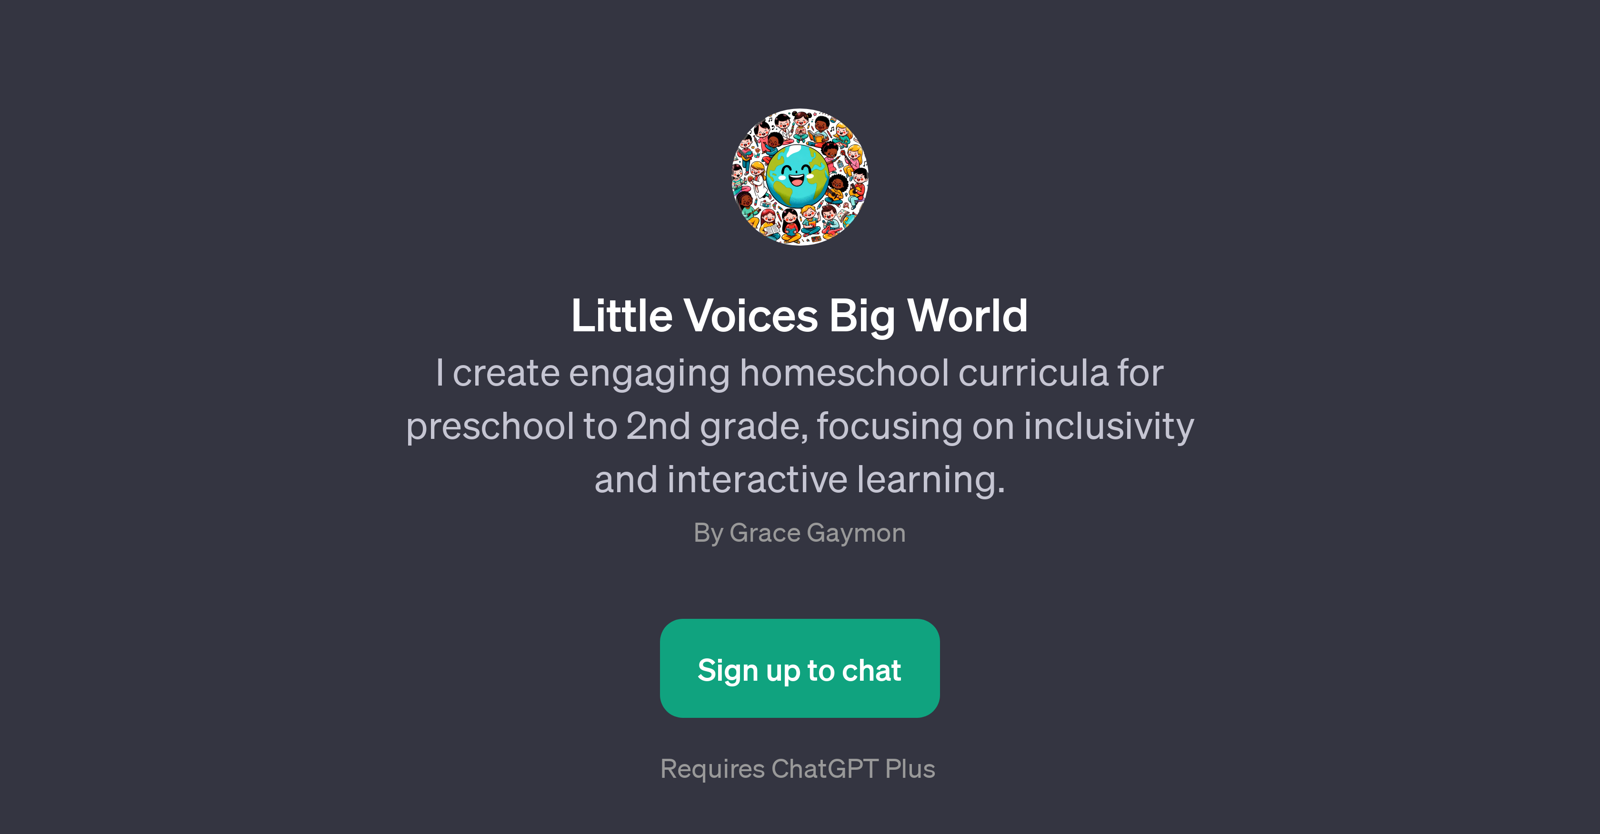 Little Voices Big World website